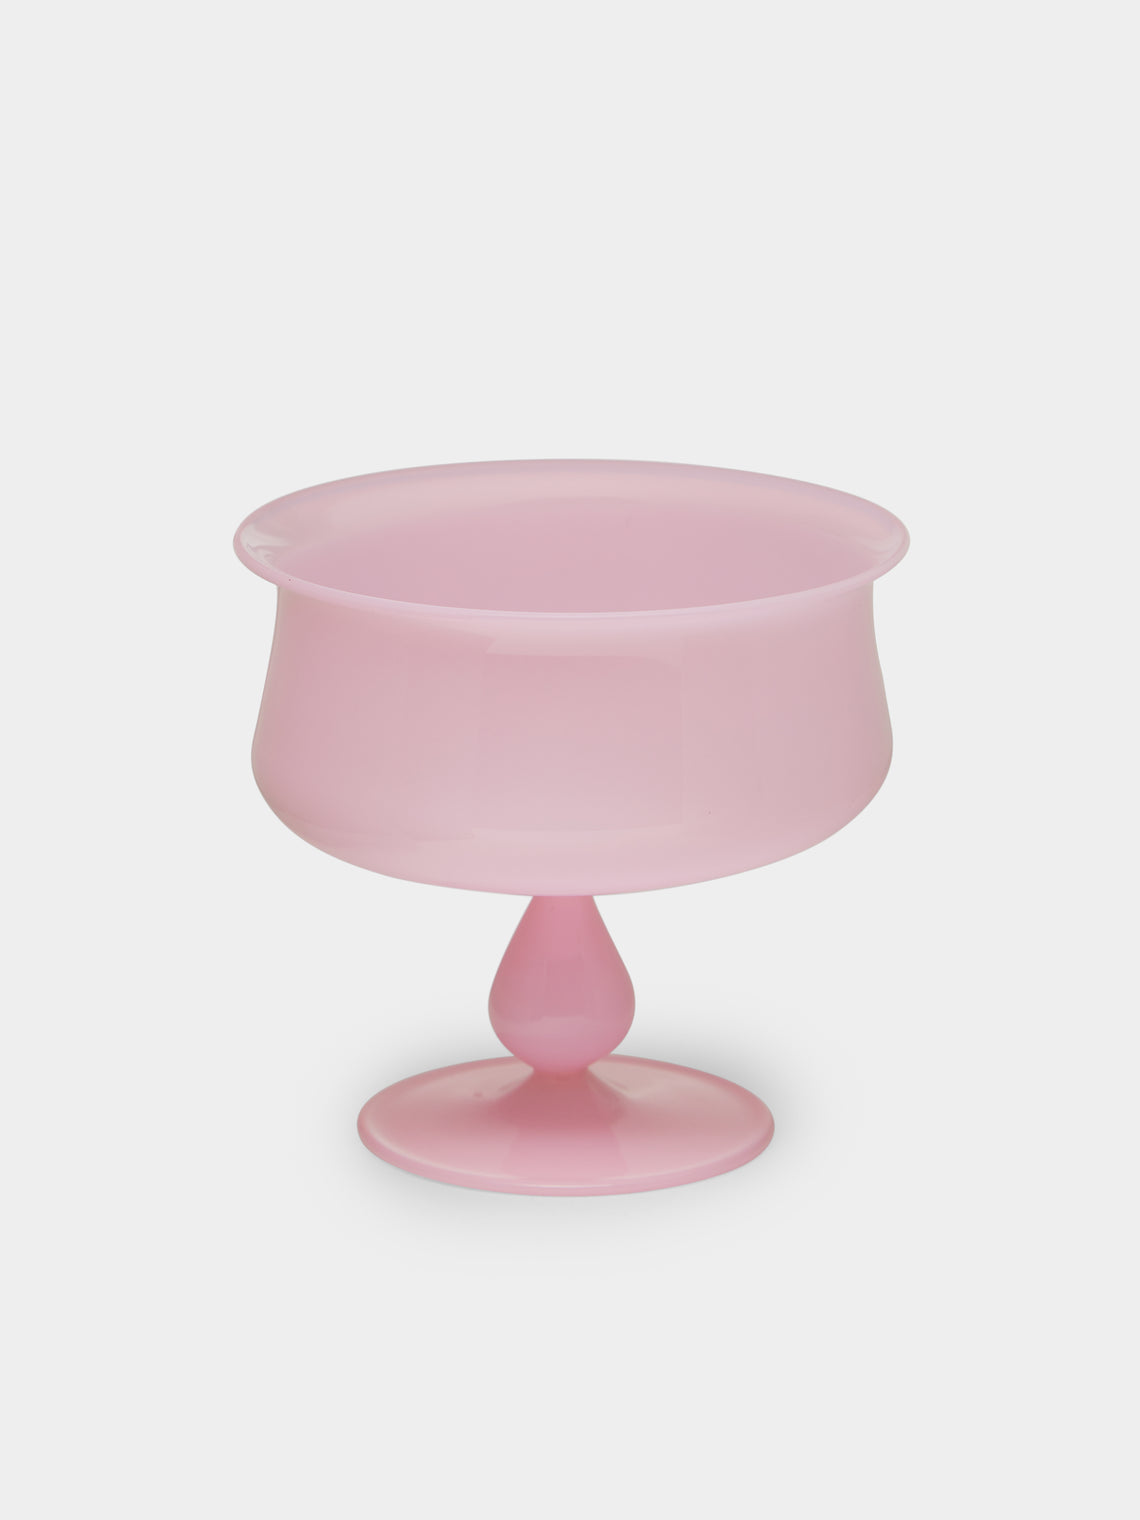 Yali Glass - Hand-Blown Murano Glass Ice Cream Sundae Serving Bowl -  - ABASK - 